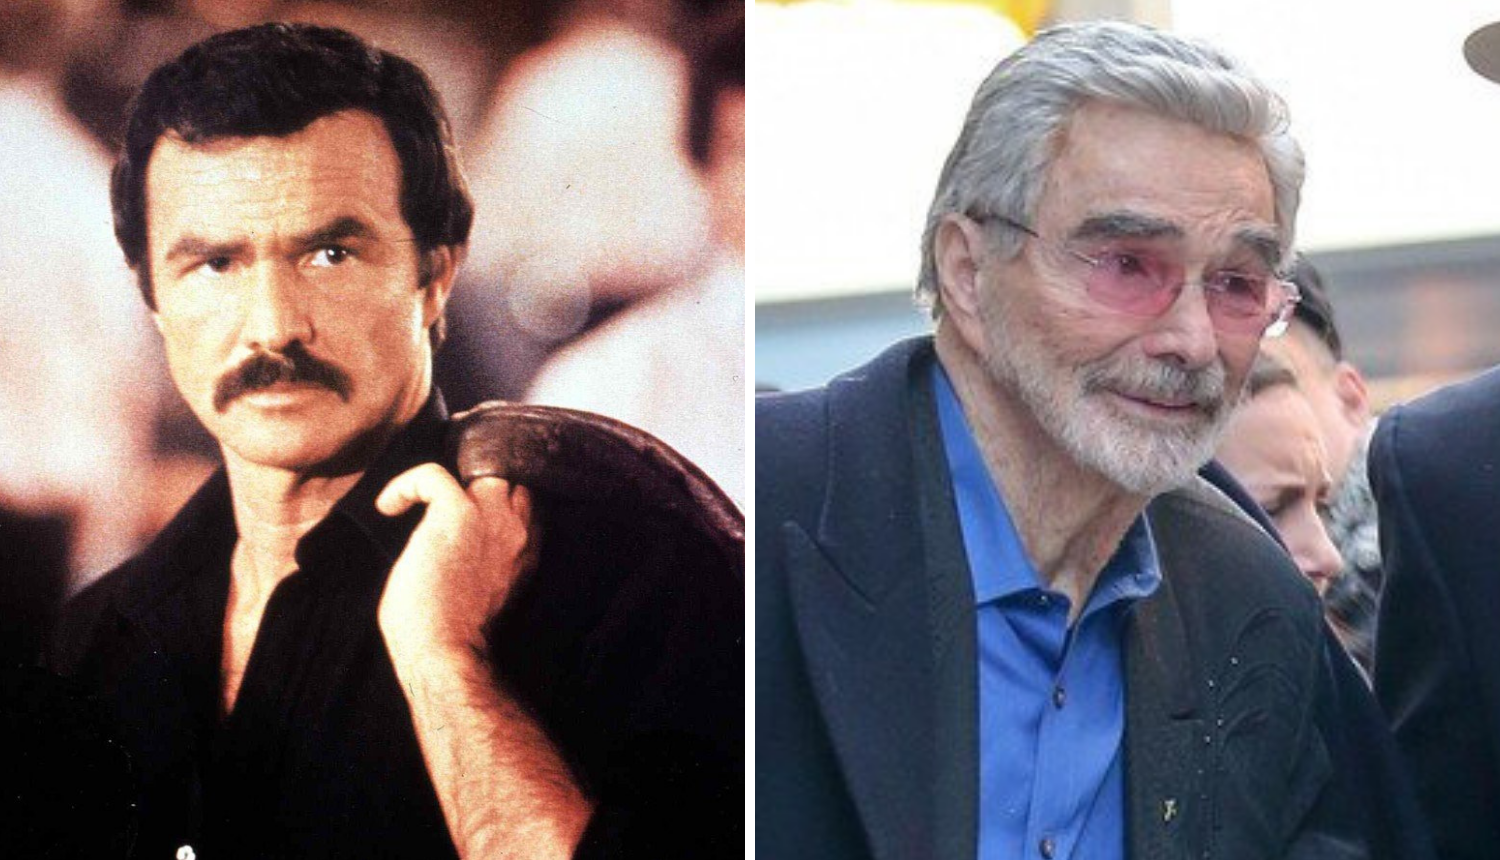 Preminuo Burt Reynolds: Bio je glumačka legenda i zavodnik